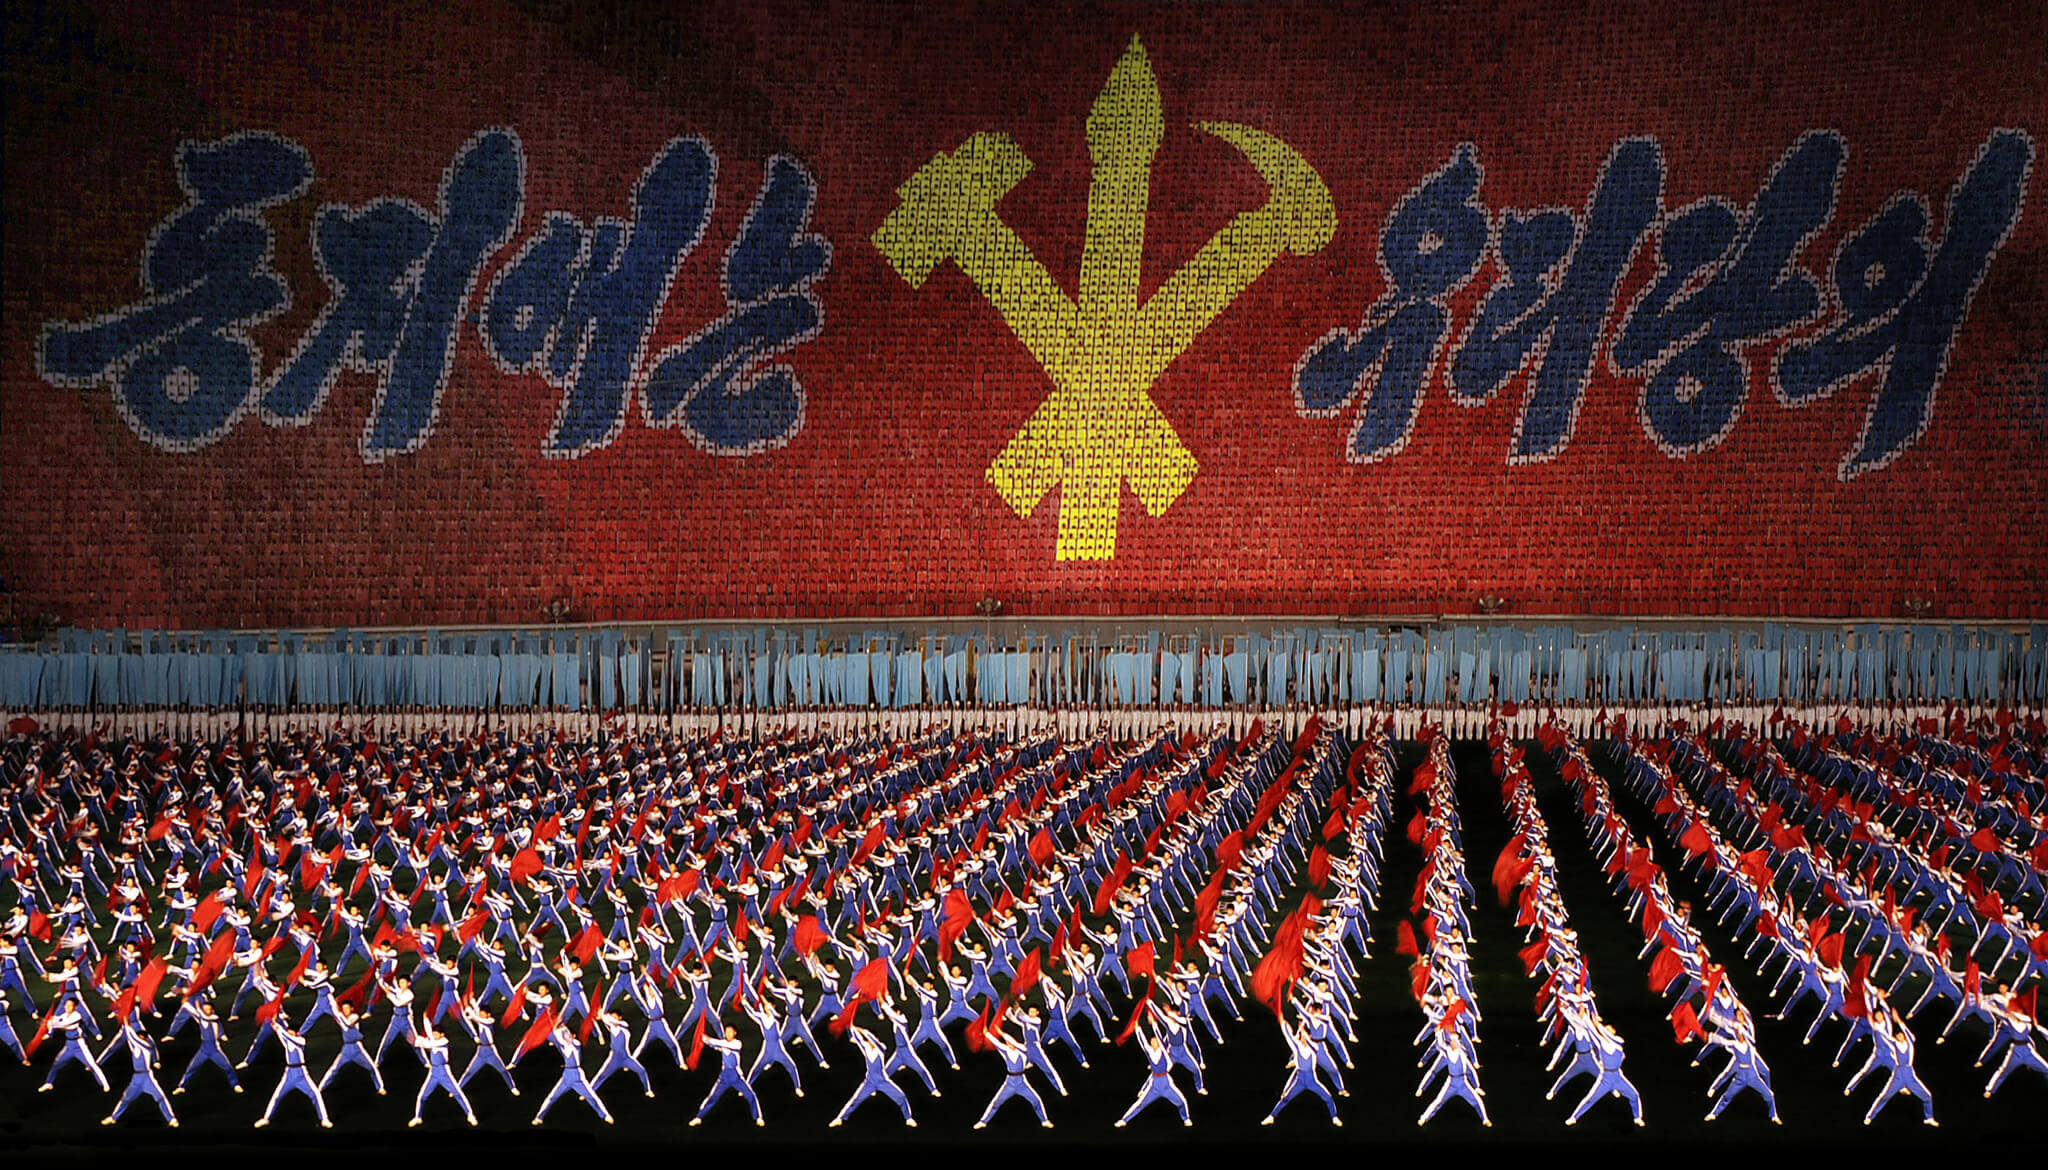 Mass games North Korea 2008-Flickr-mister addd